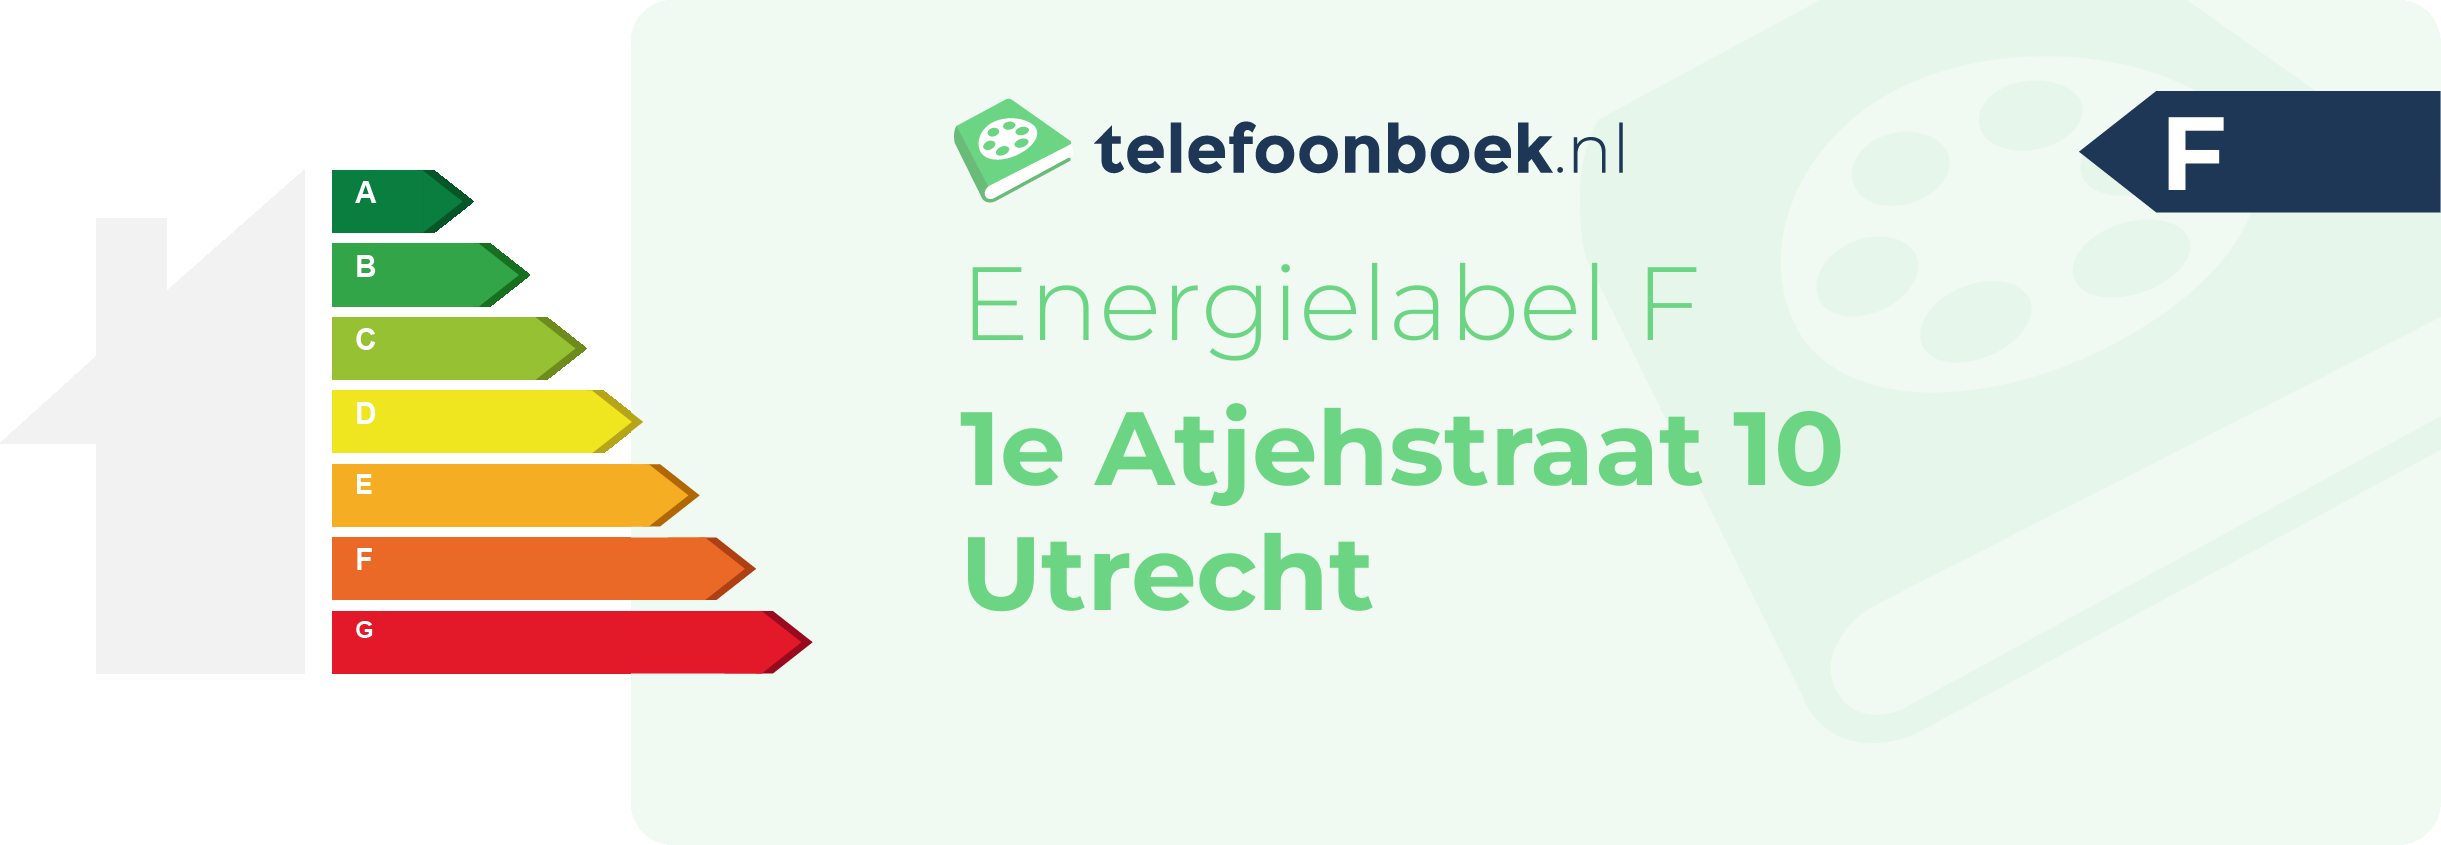 Energielabel 1e Atjehstraat 10 Utrecht